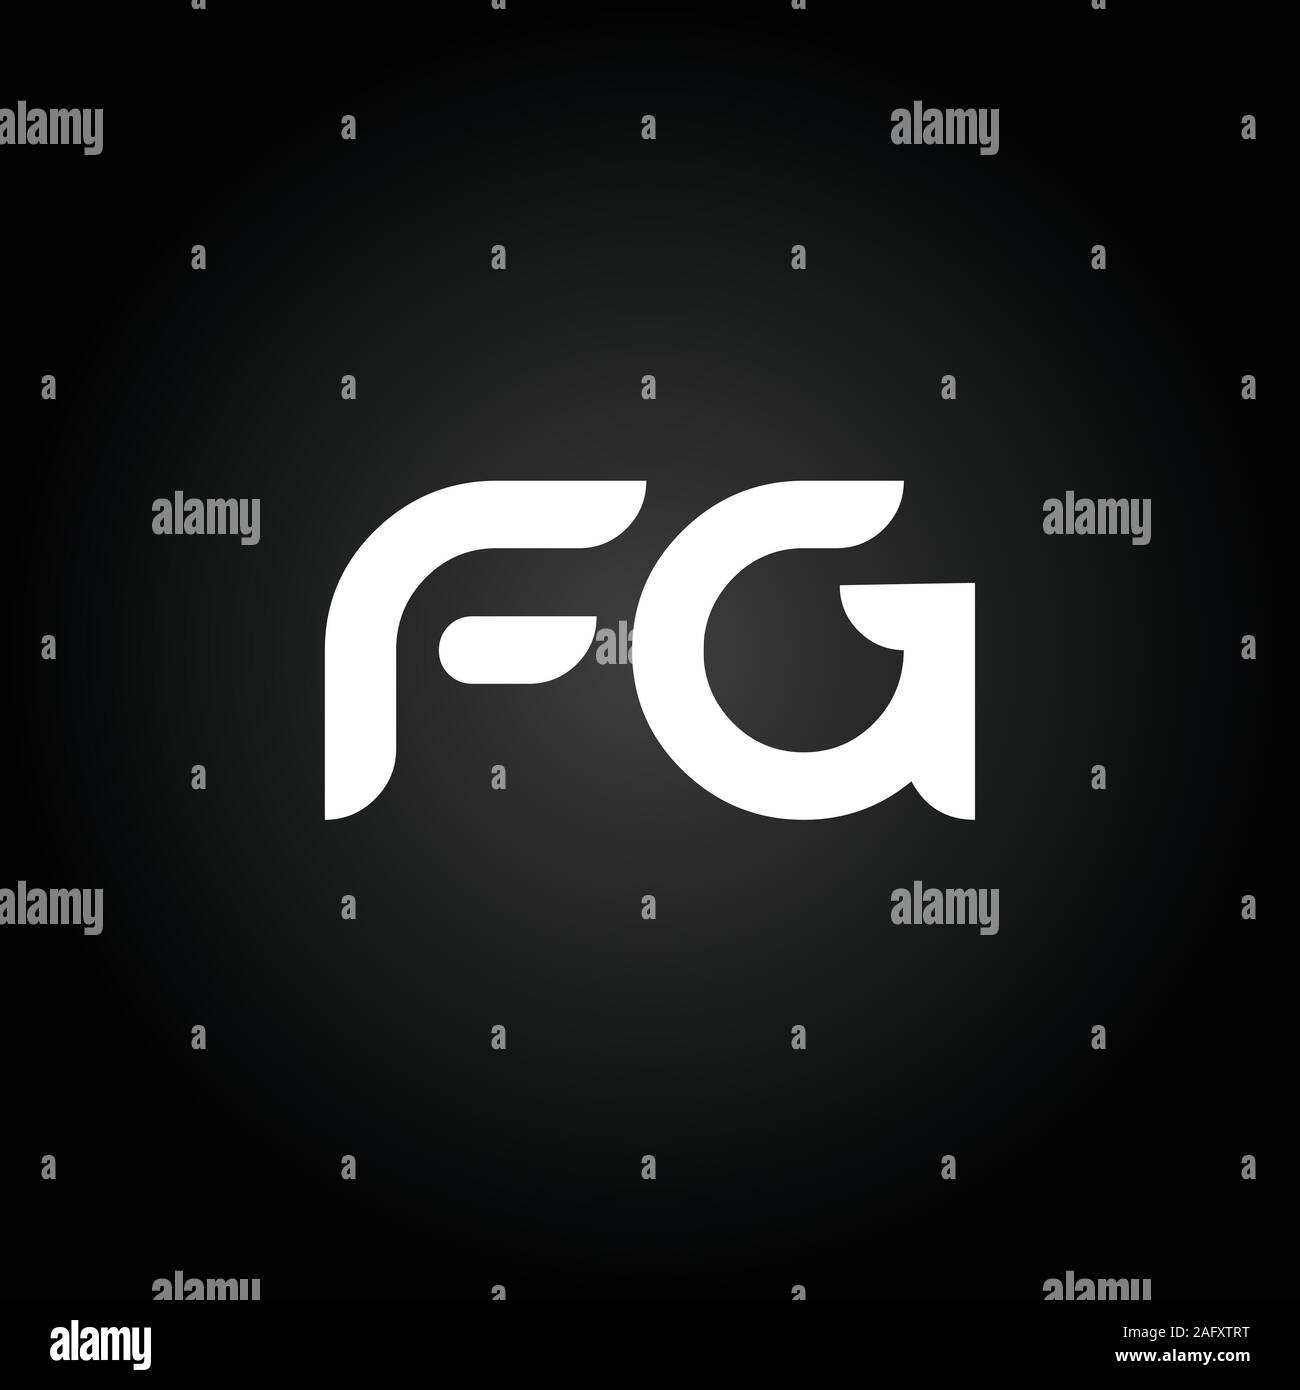 Initial FG Letter Linked Logo. Creative Letter FG Modern Business Logo Vector Template. FG Logo Design Stock Vector